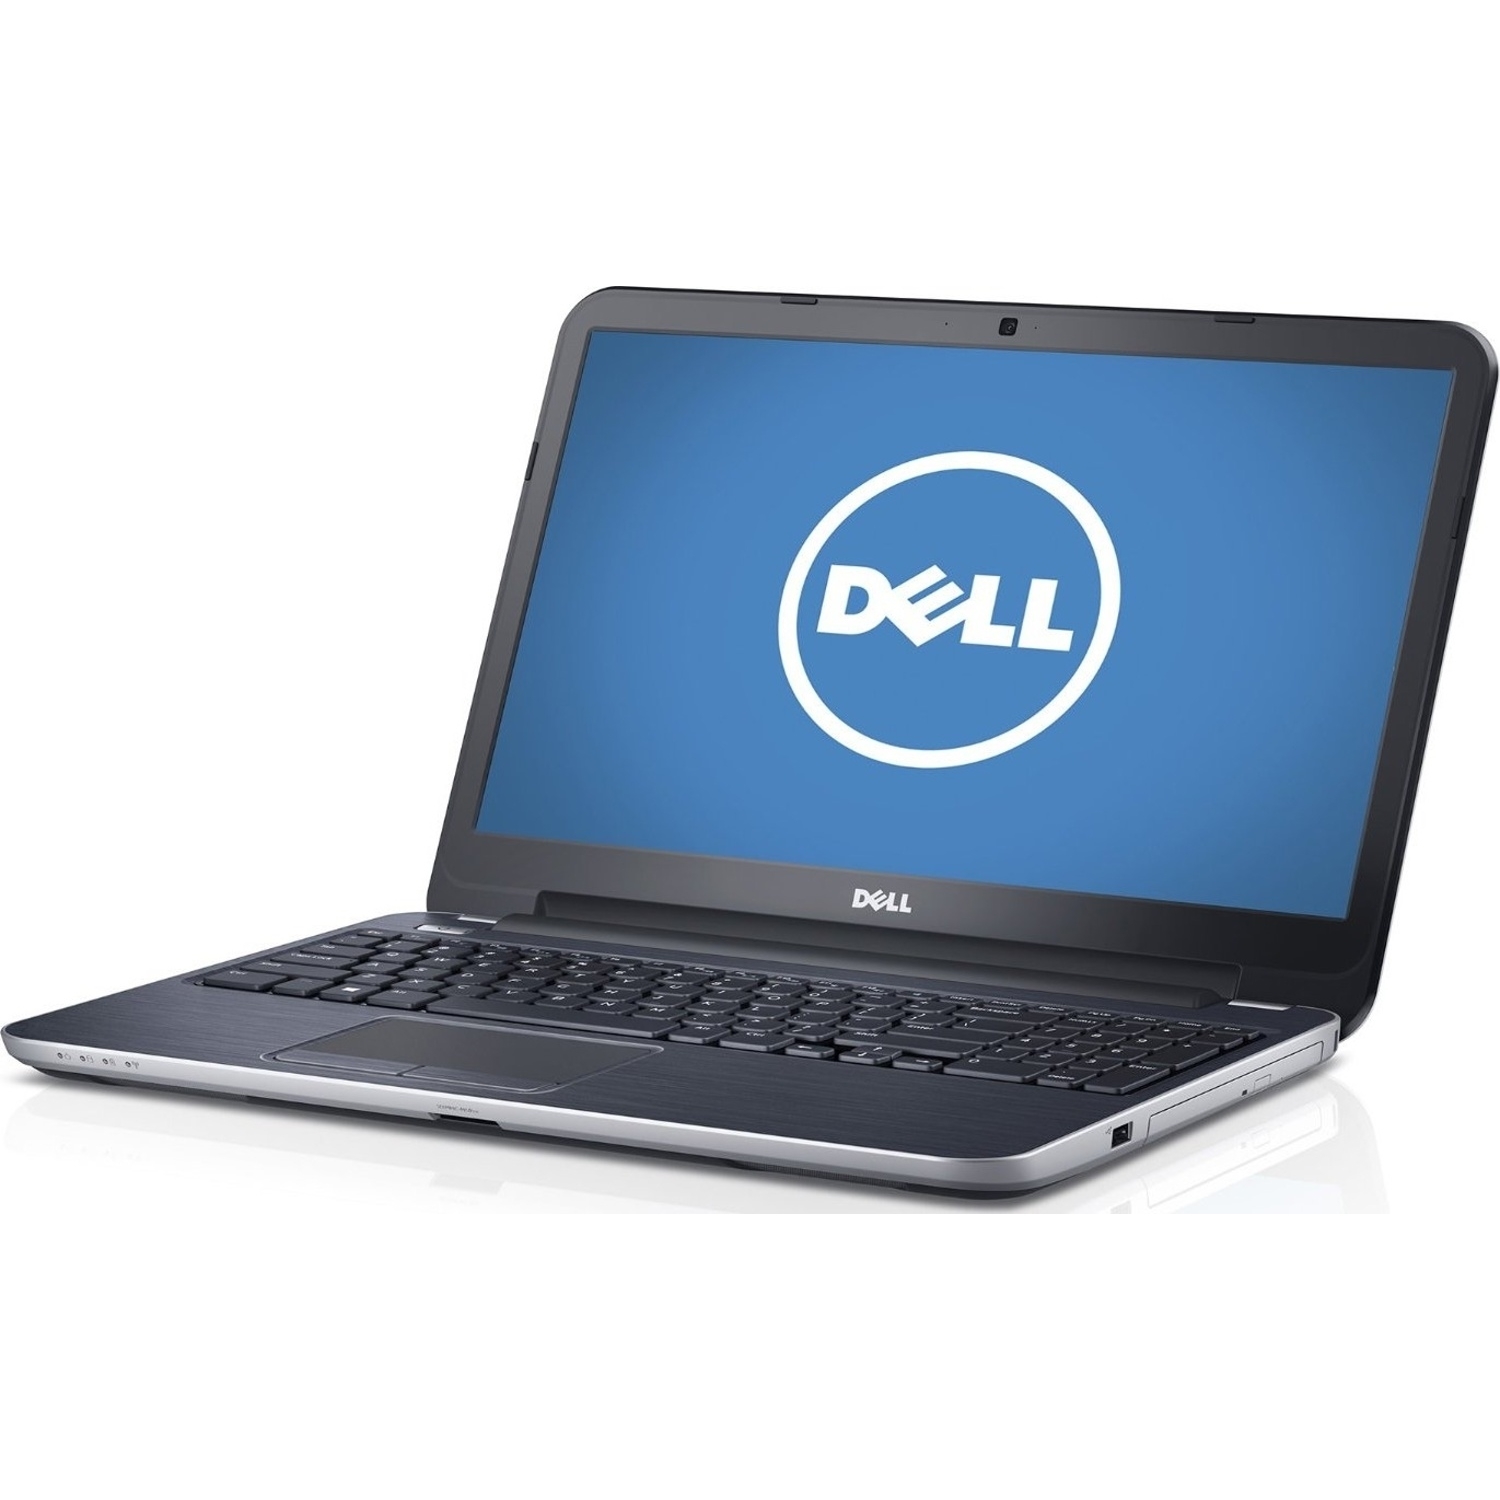 Dell Dell Inspiron 17R-5737 Intel Core i7-4500U X2 1.8 GHz ...